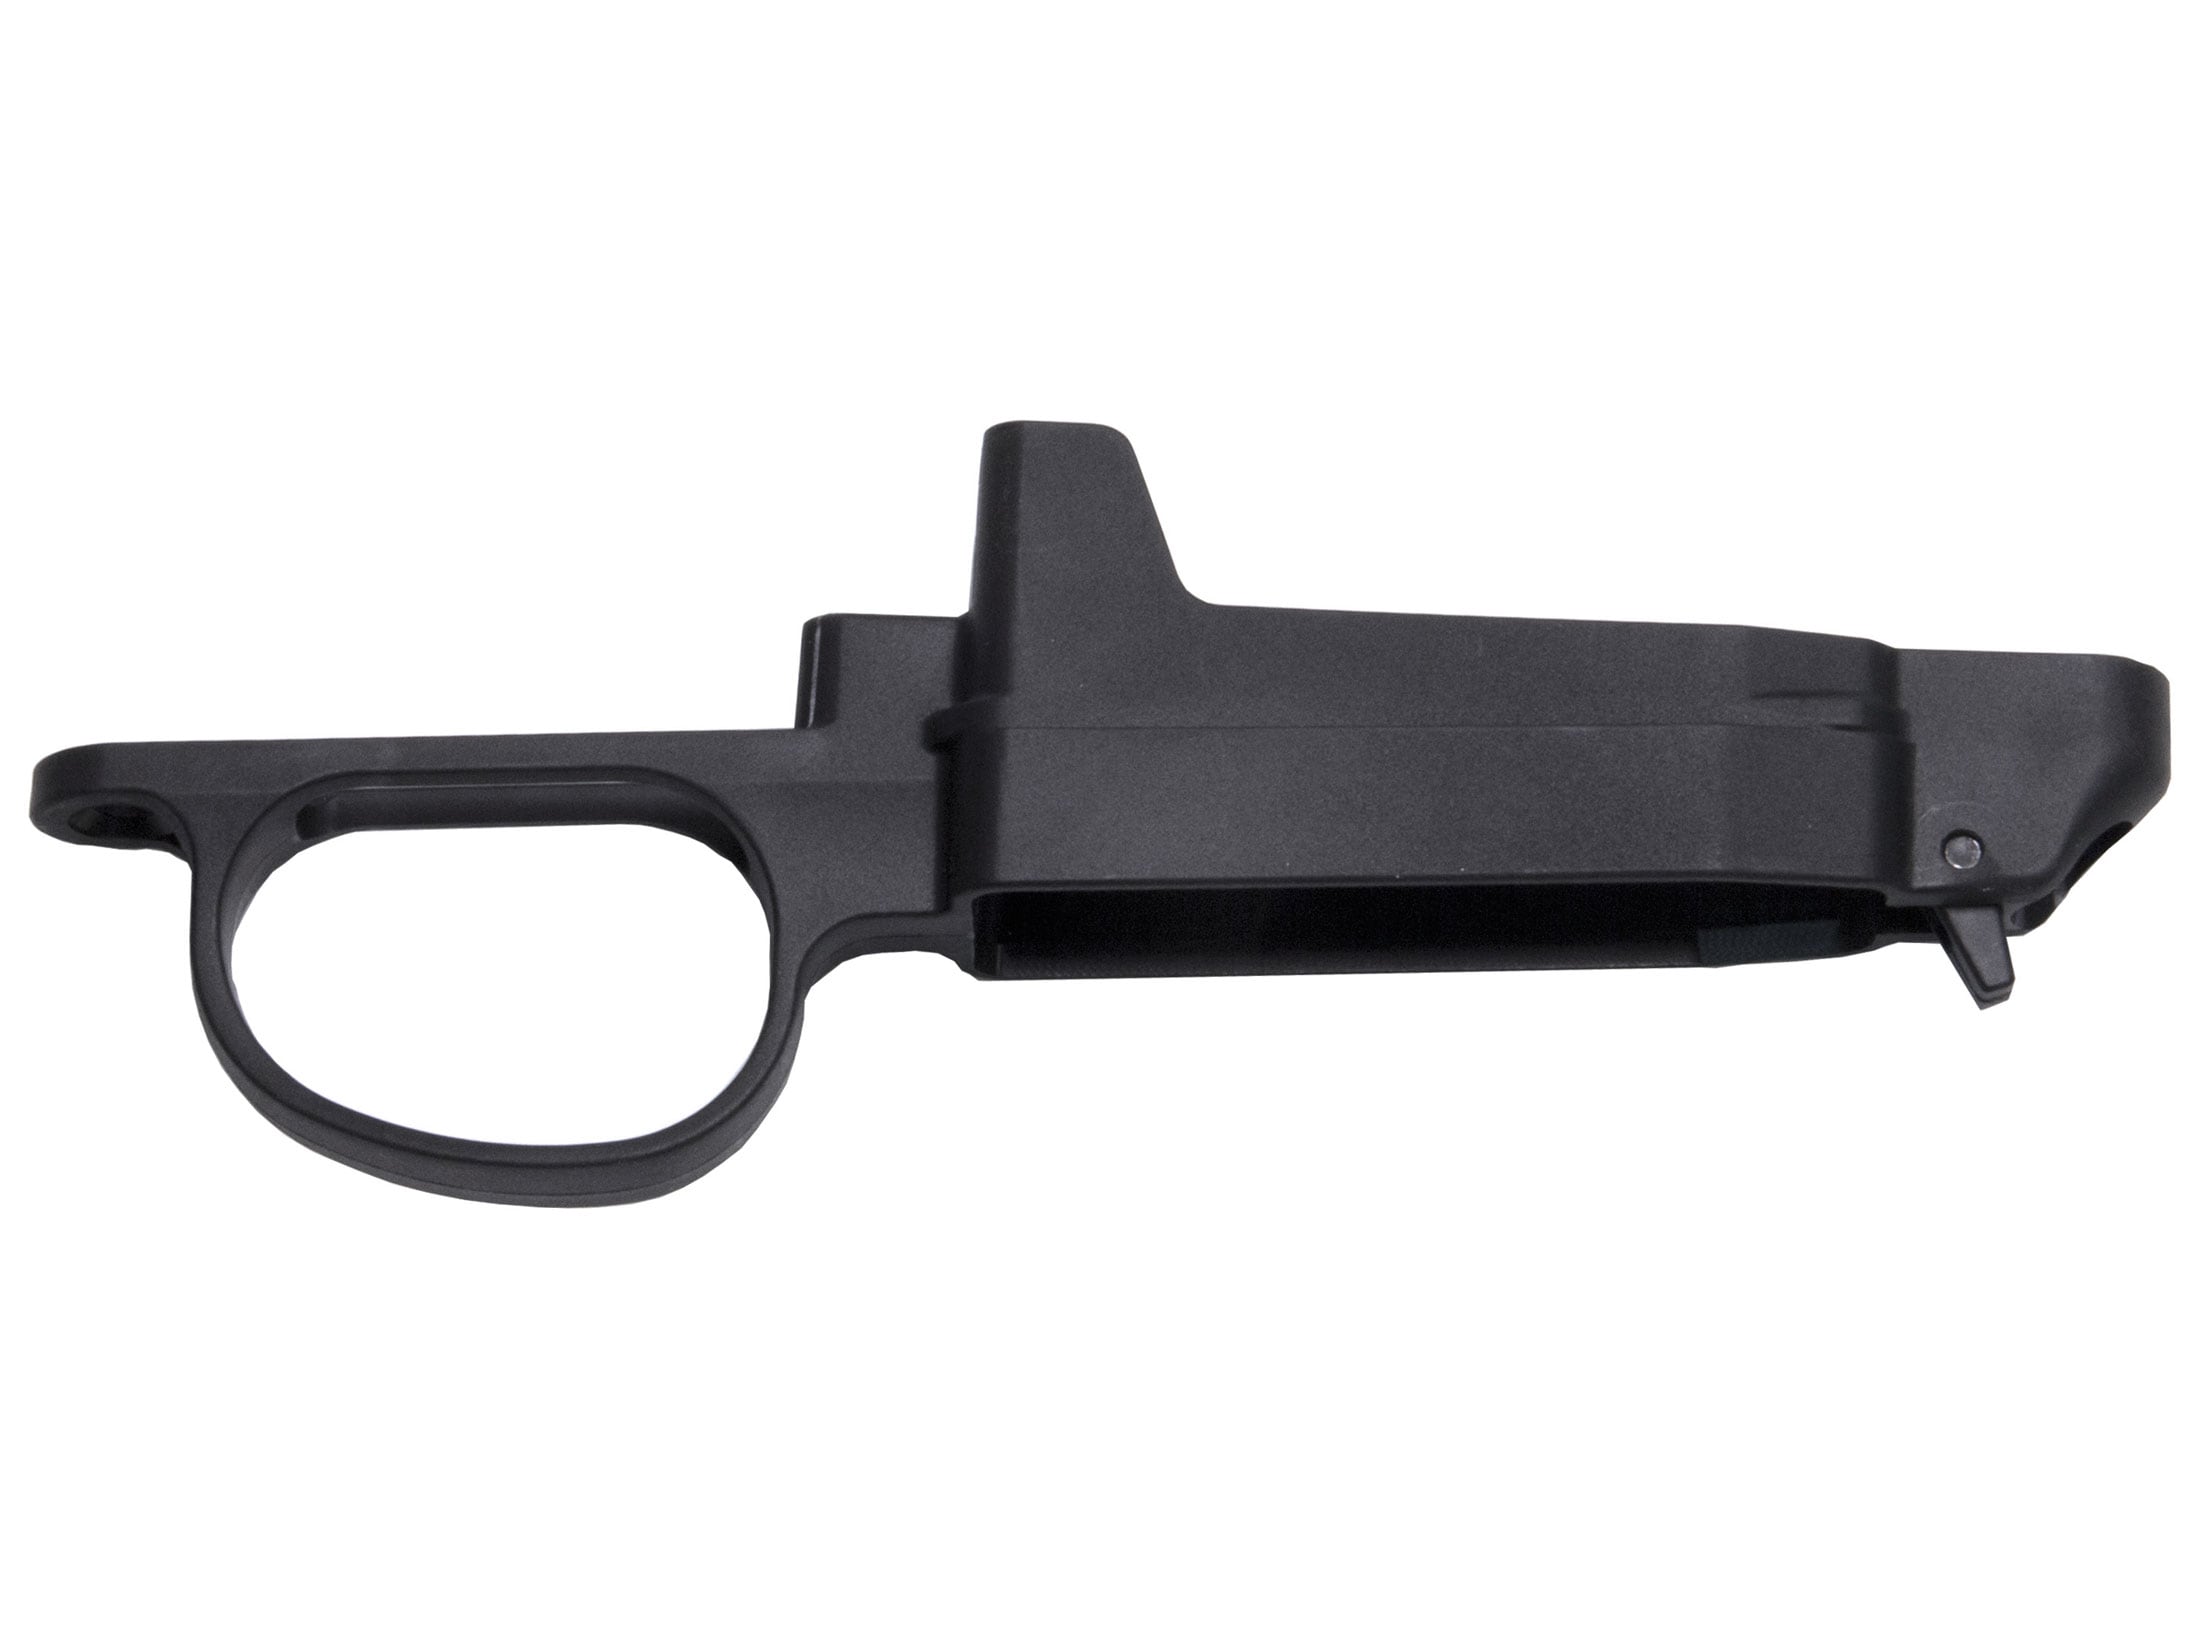 ESCORT LSI Detach Mag Kit Remington 700 BDL Series 5rd for sale online 